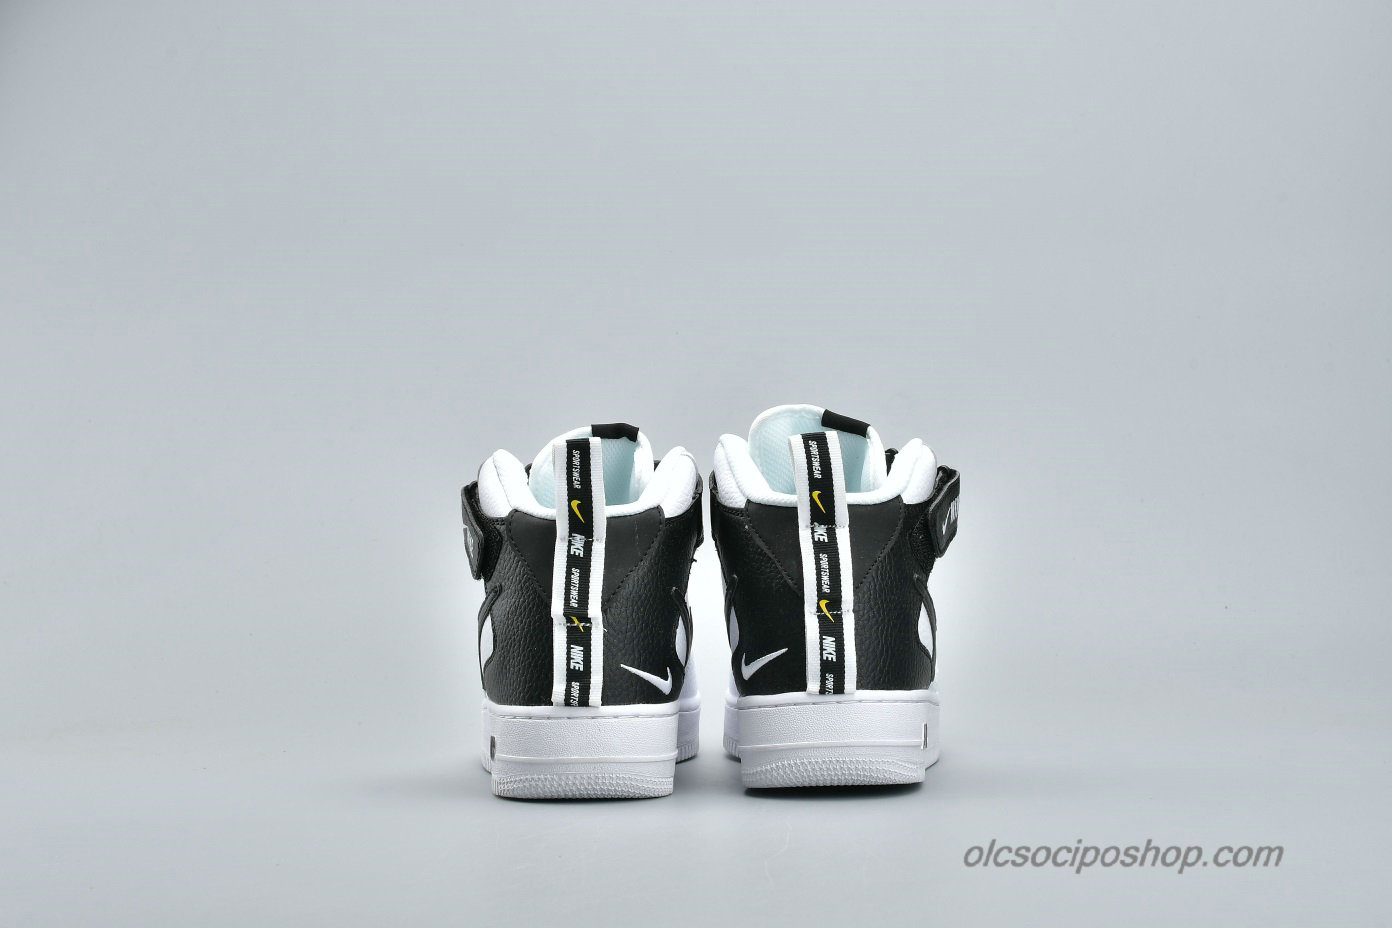 Nike Air Force 1 High 07 Fehér/Fekete Cipők (AJ7747-100)